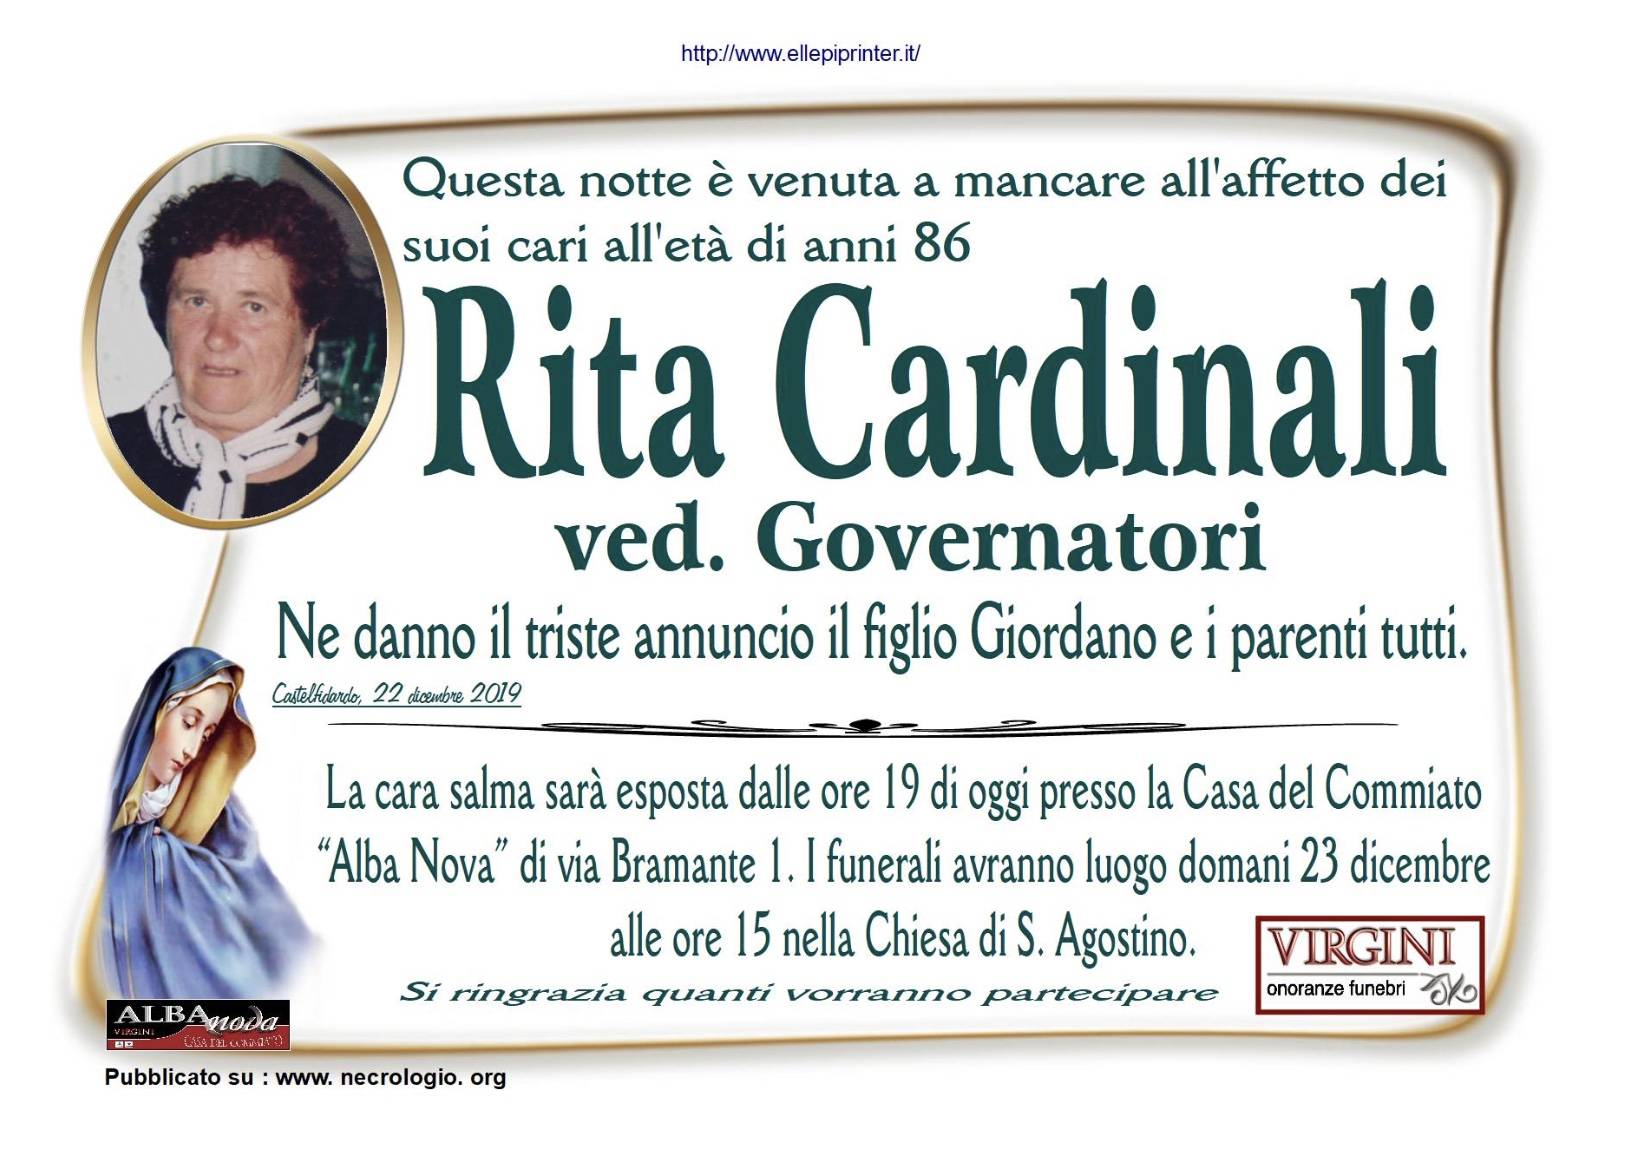 Rita Cardinali